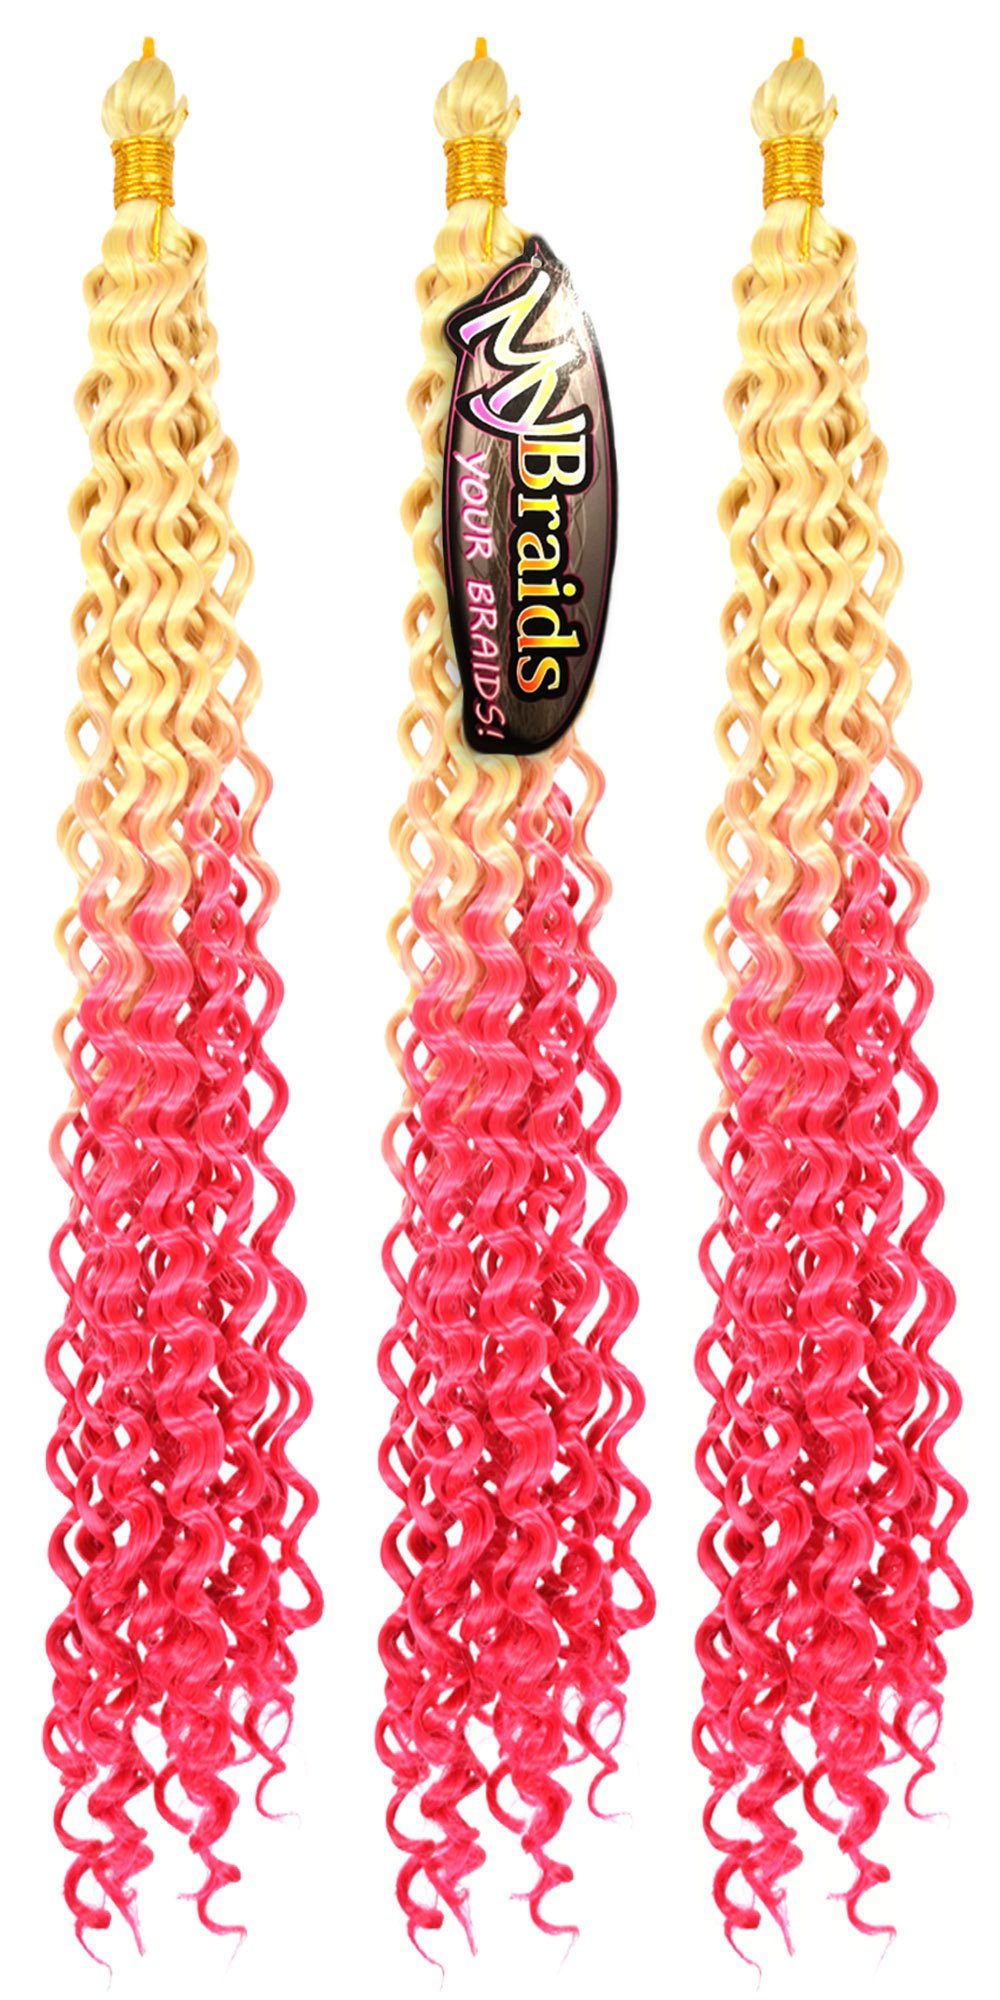 Flechthaar Ombre Deep Wave Zöpfe MyBraids 16-WS Crochet Braids YOUR Hellblond-Pink 3er Wellig BRAIDS! Kunsthaar-Extension Pack